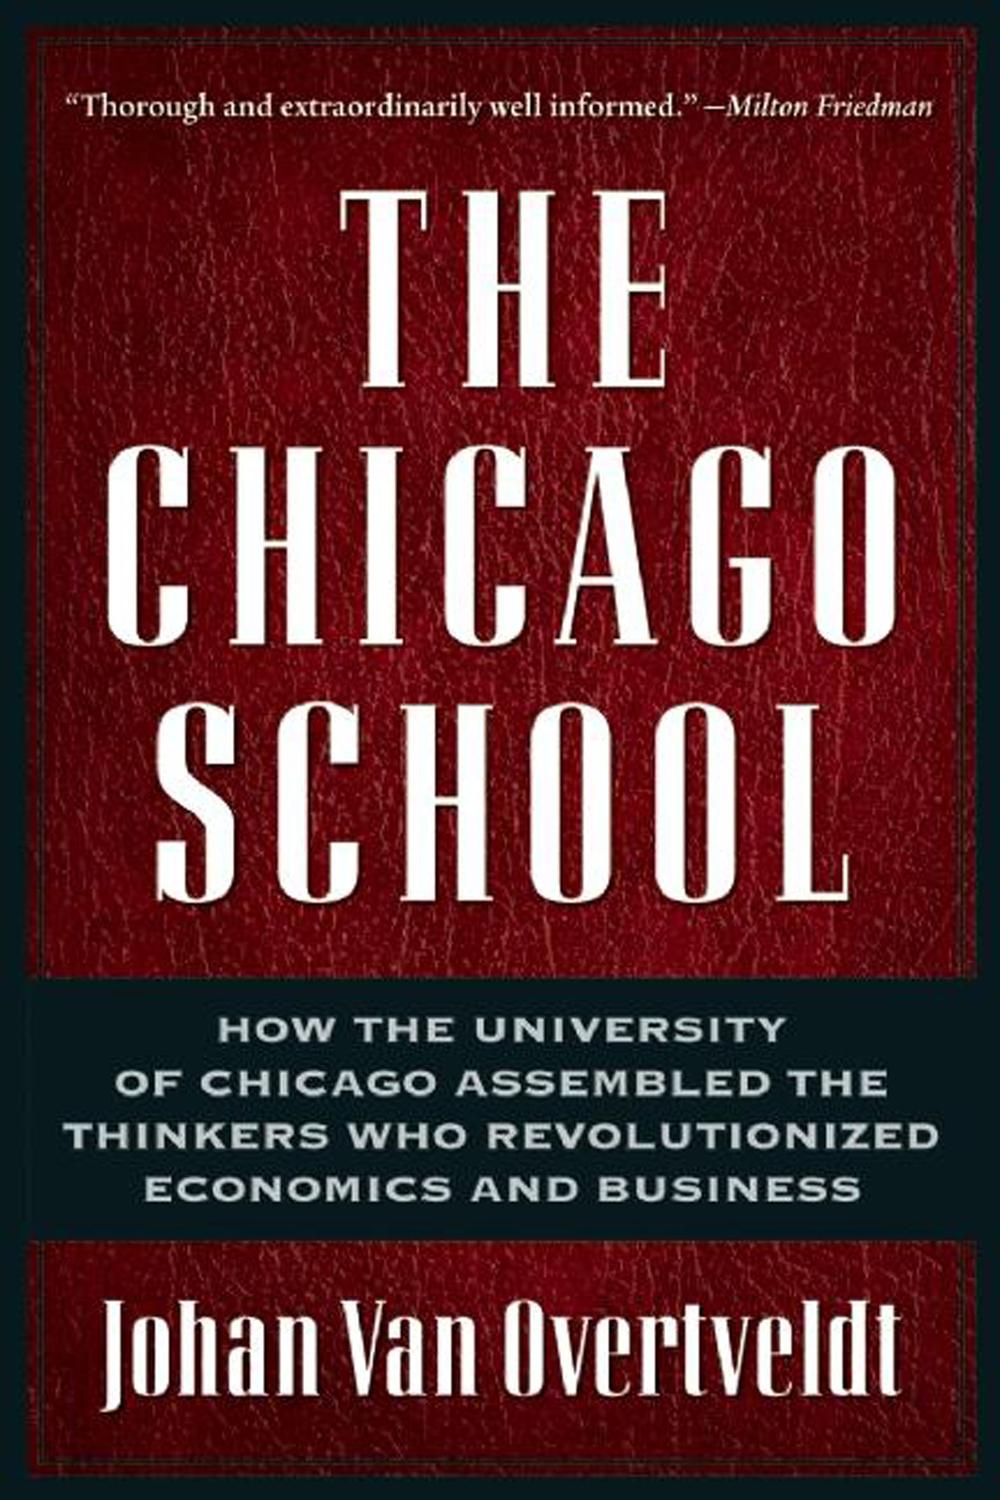 The Chicago School - Johan Van Overtveldt